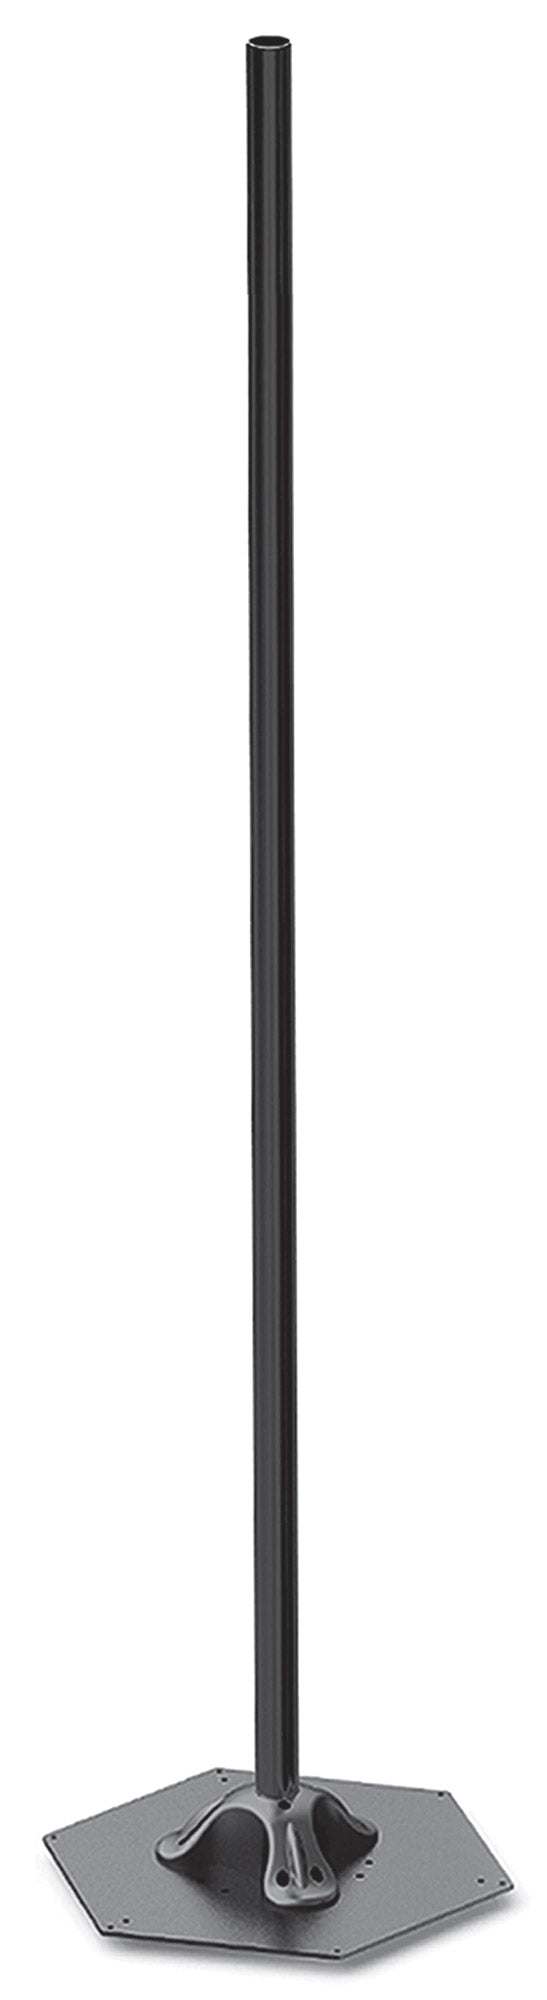 Elegance Pole H214 cm für elektrische Heizlampen Moel 4464 Schwarz sconto